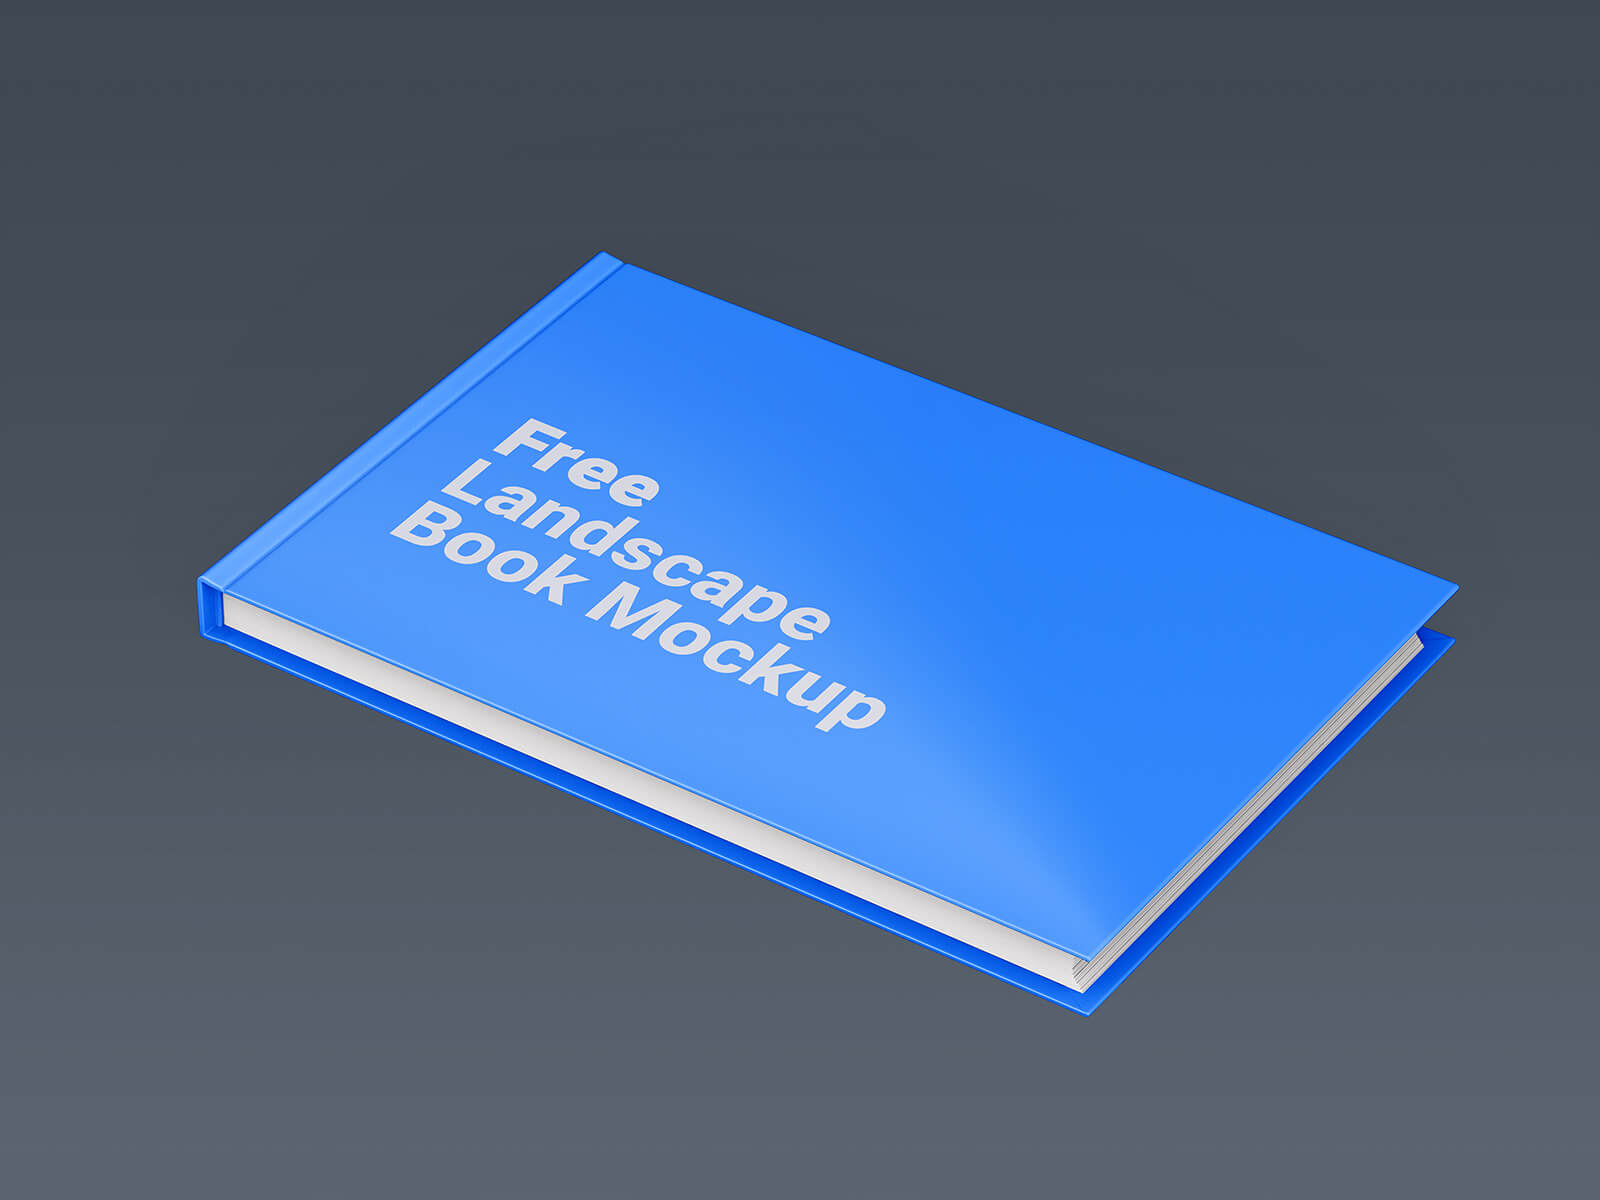 Free Landscape Book Mockup PSD Set